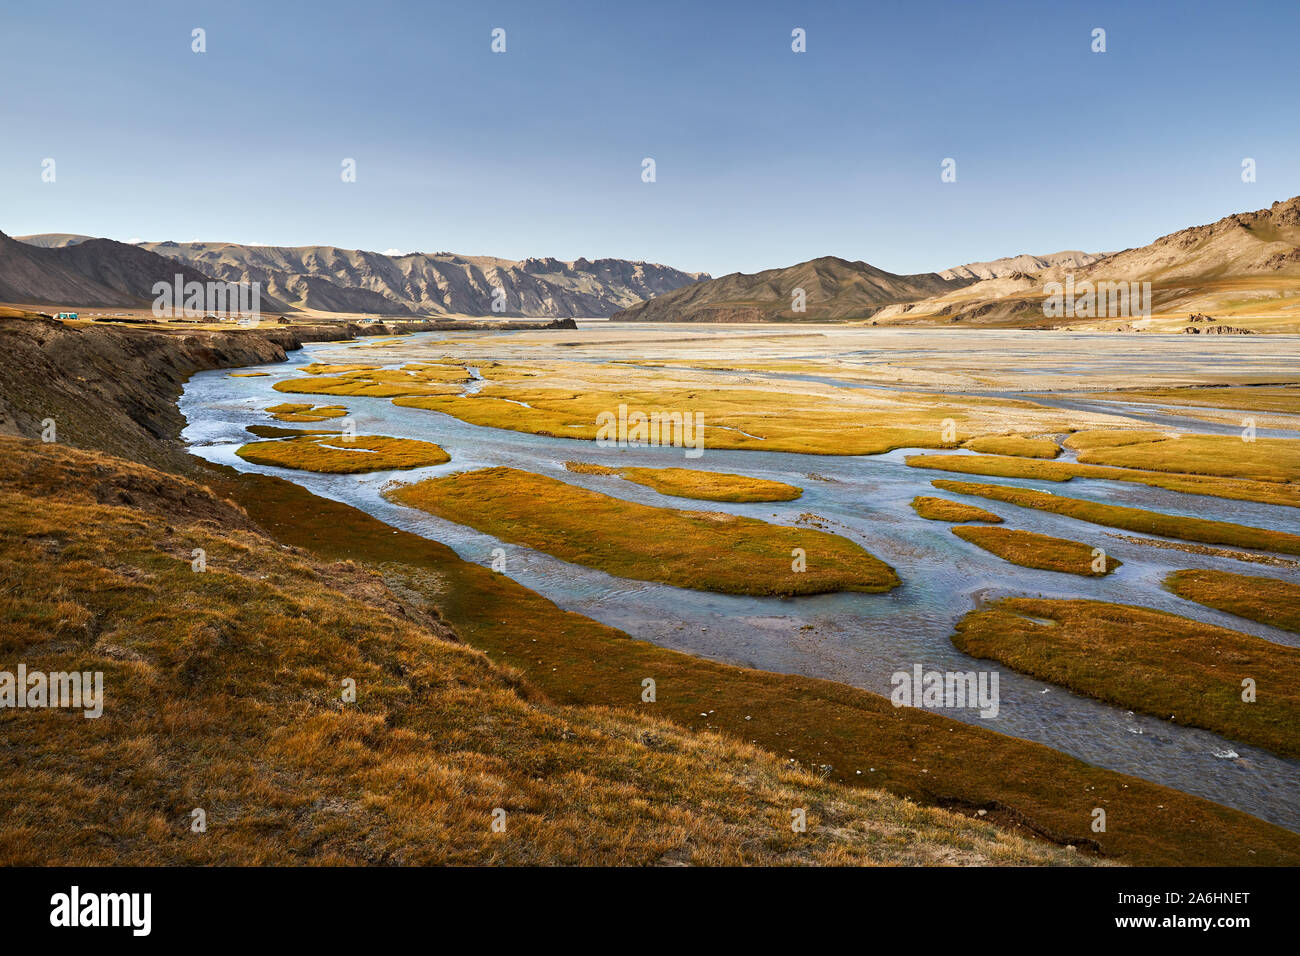 Die schöne Landschaft des Flusses im Tal von Kel Suu See in der naryn Region, Kirgisistan Stockfoto